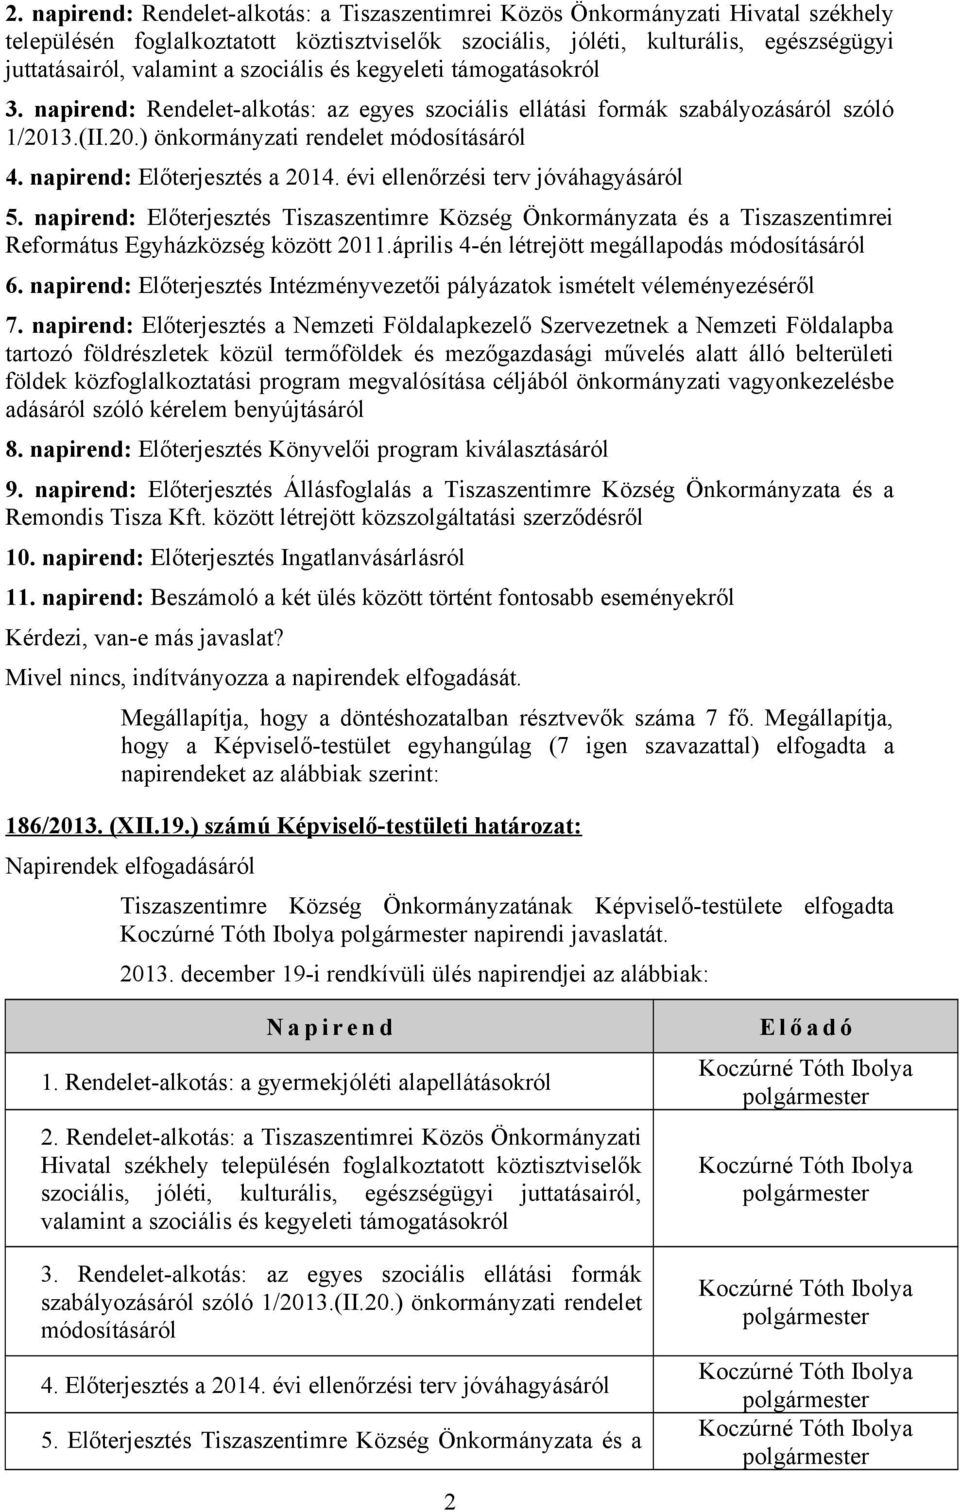 napirend: Előterjesztés a 2014. évi ellenőrzési terv jóváhagyásáról 5. napirend: Előterjesztés Tiszaszentimre Község Önkormányzata és a Tiszaszentimrei Református Egyházközség között 2011.